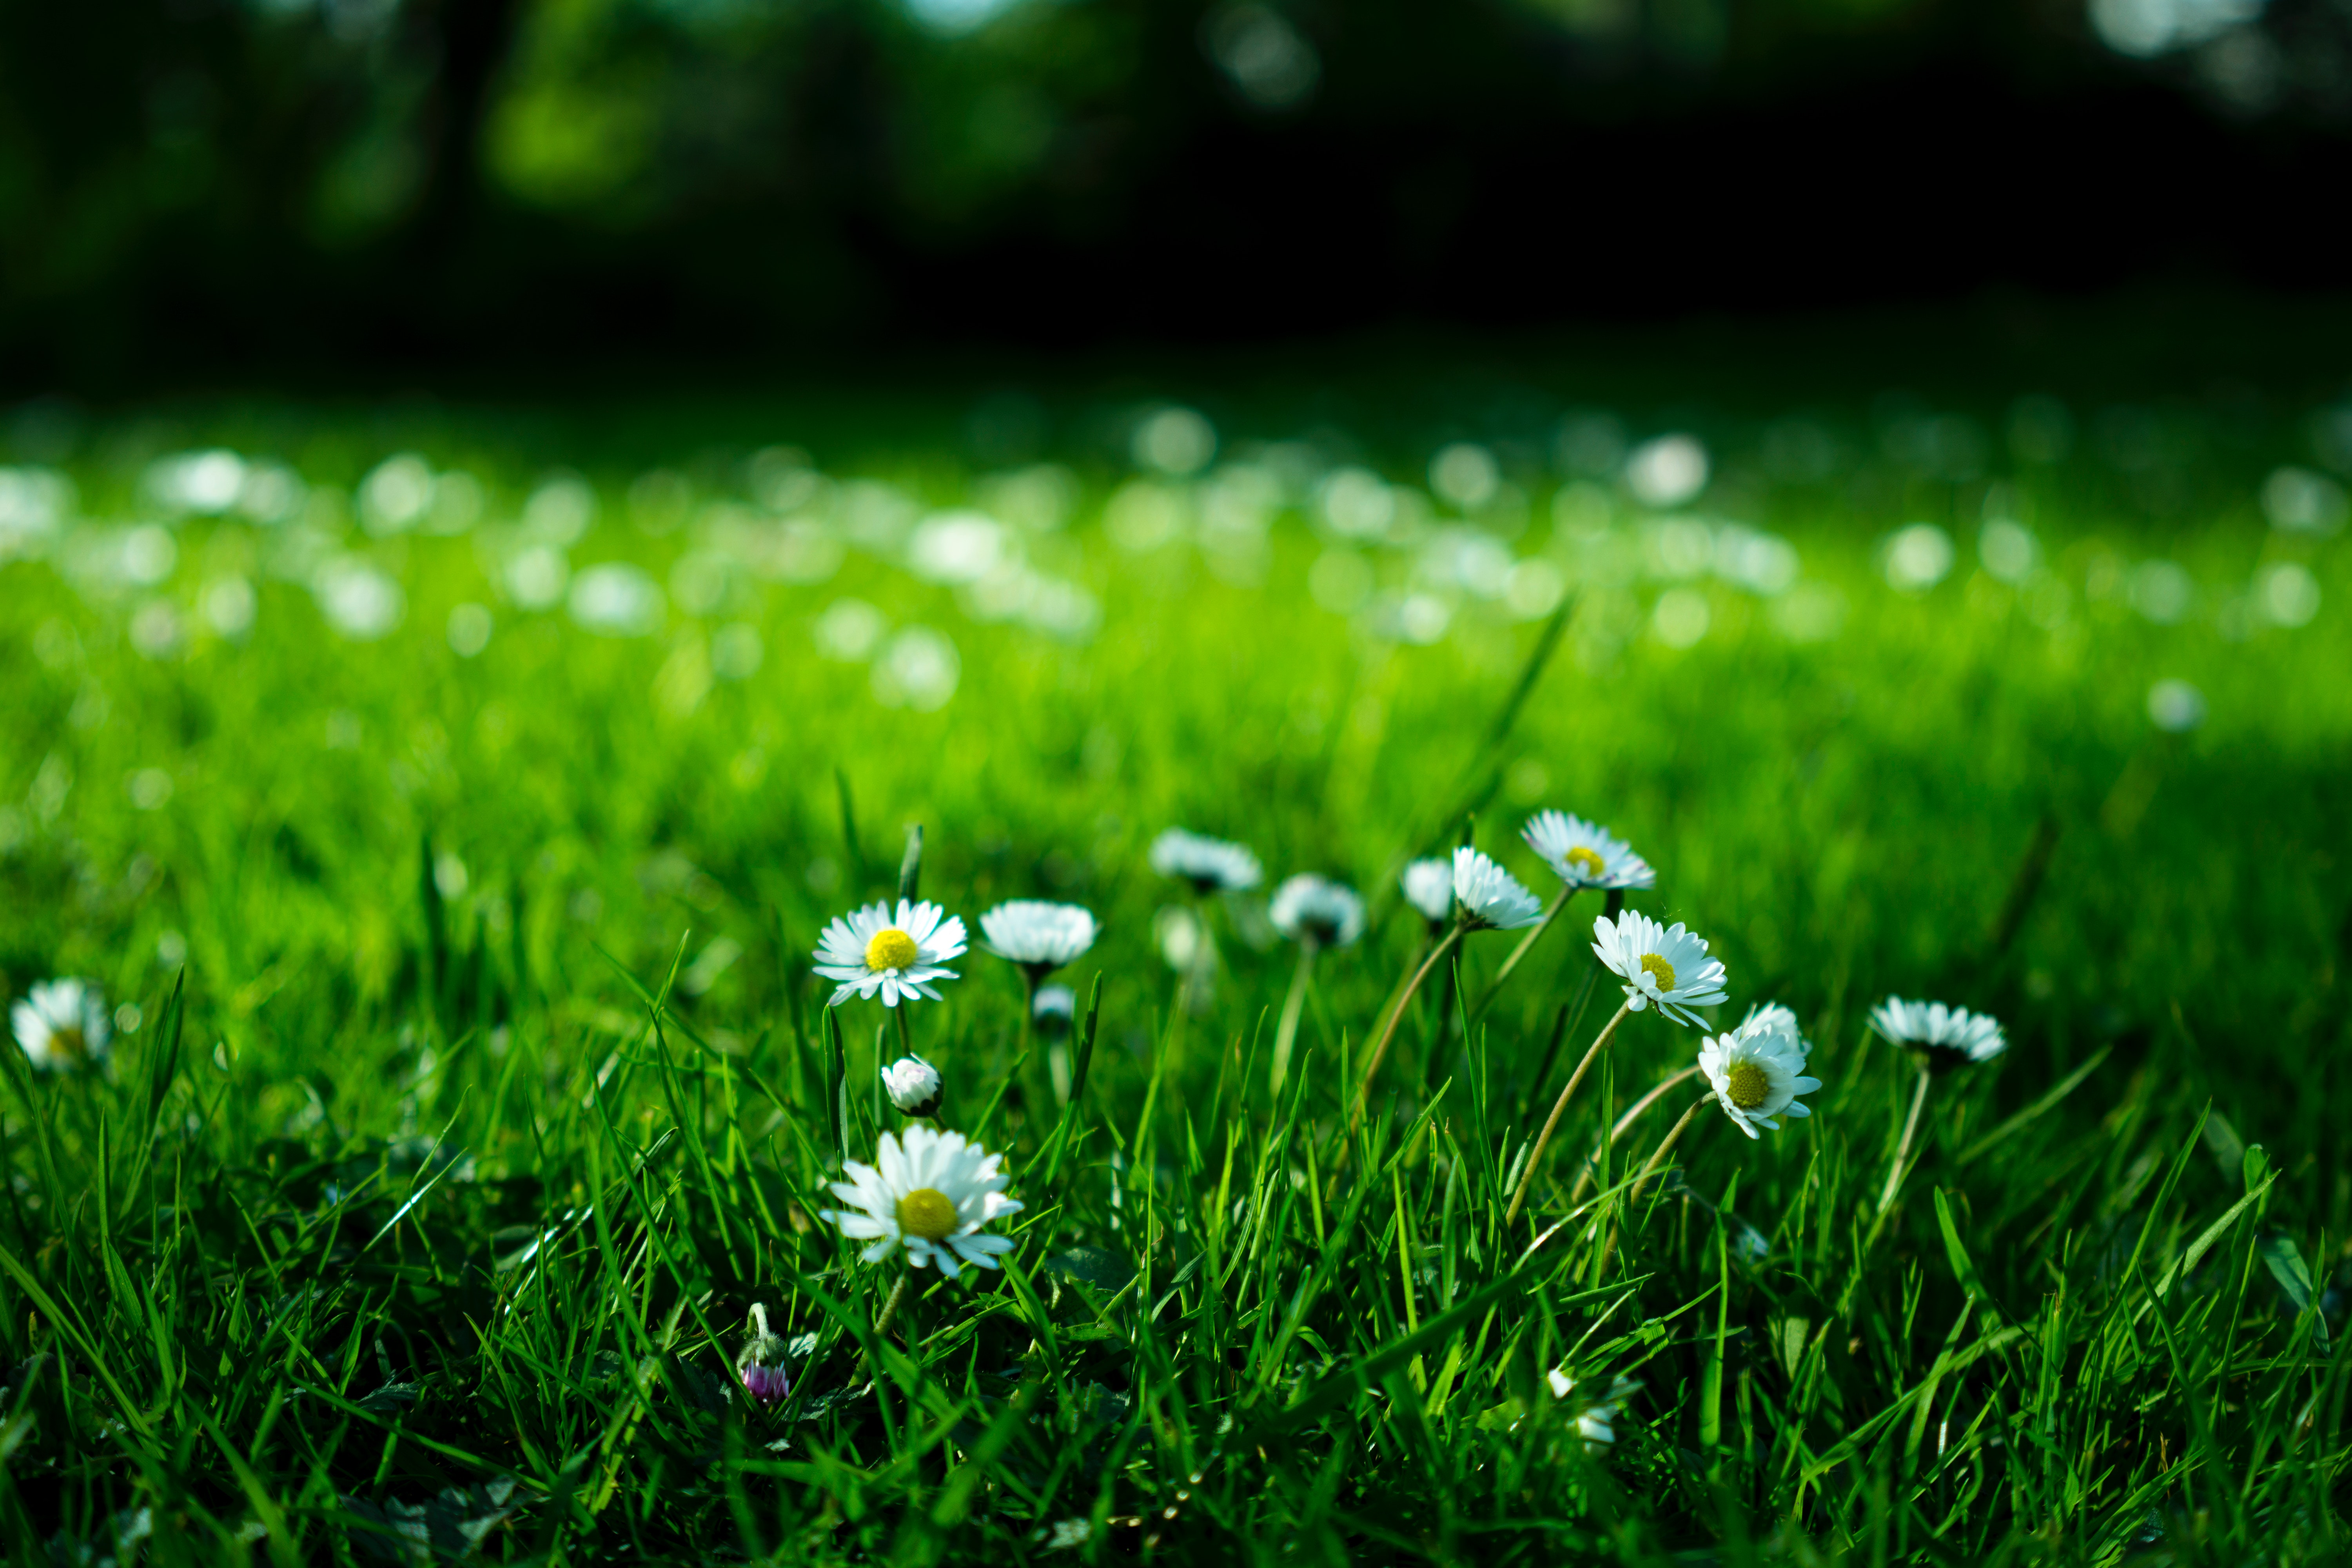 1000+ Beautiful Green Grass Photos · Pexels · Free Stock Photos